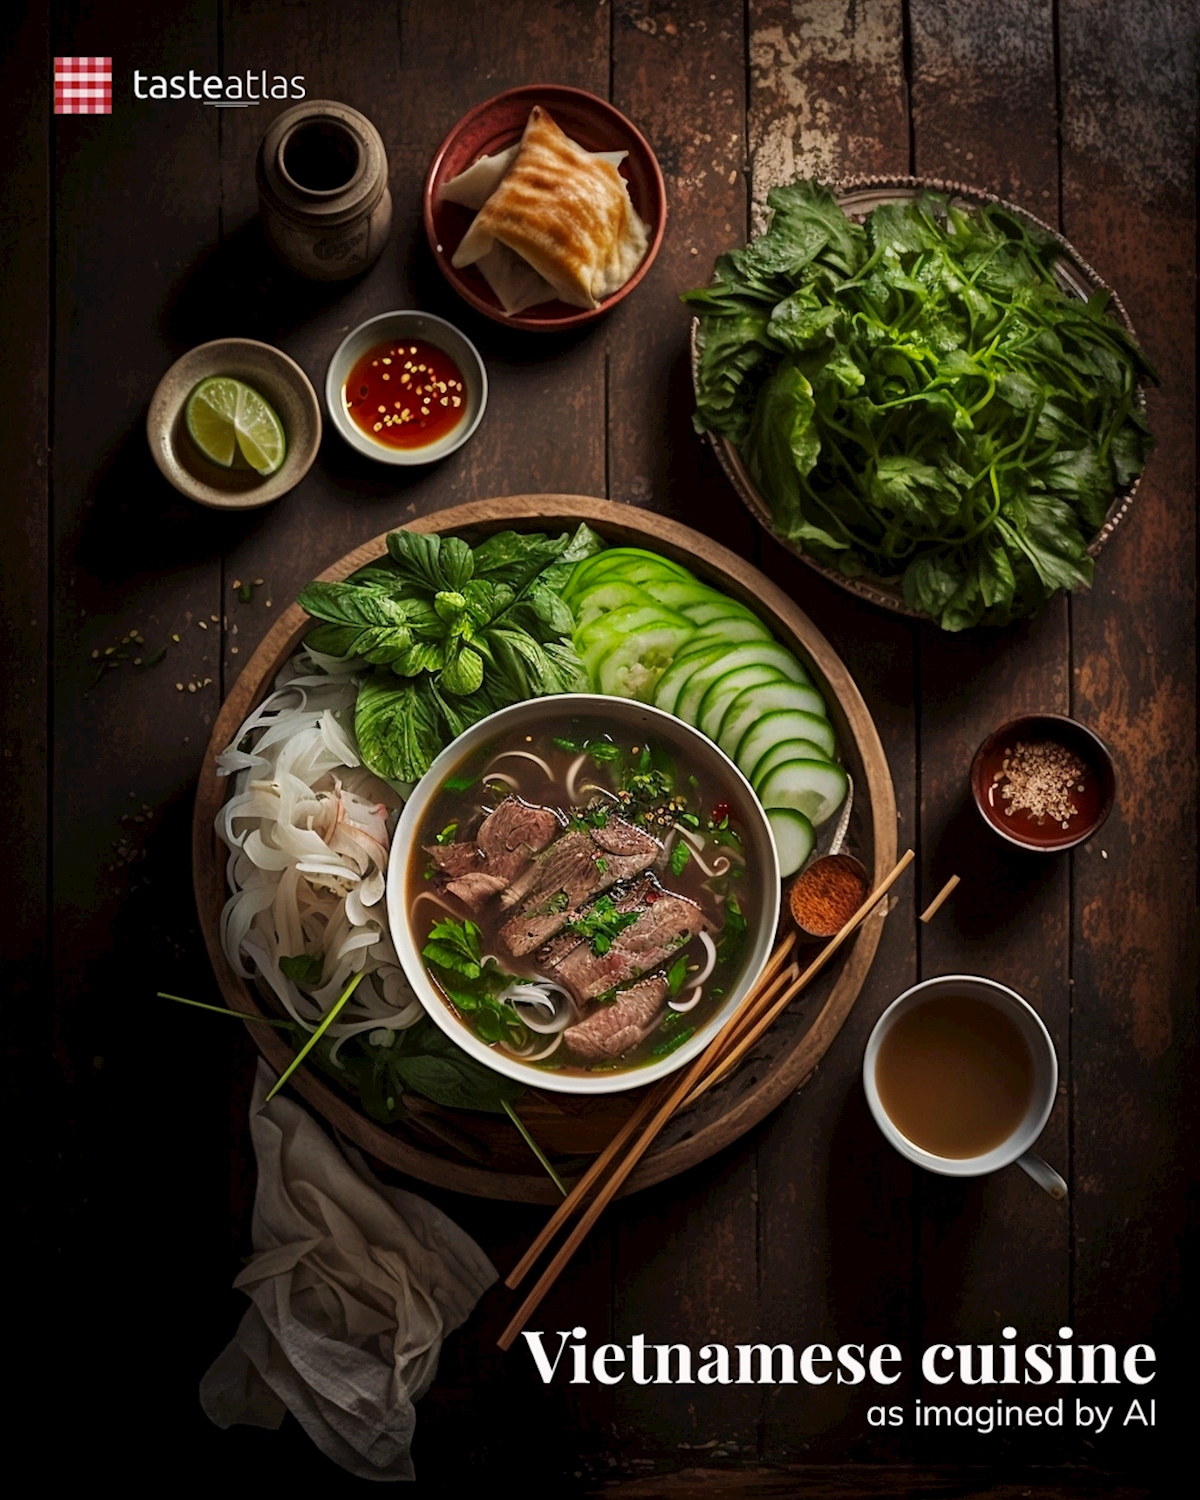 Prompt: Imagine Vietnamese cuisine